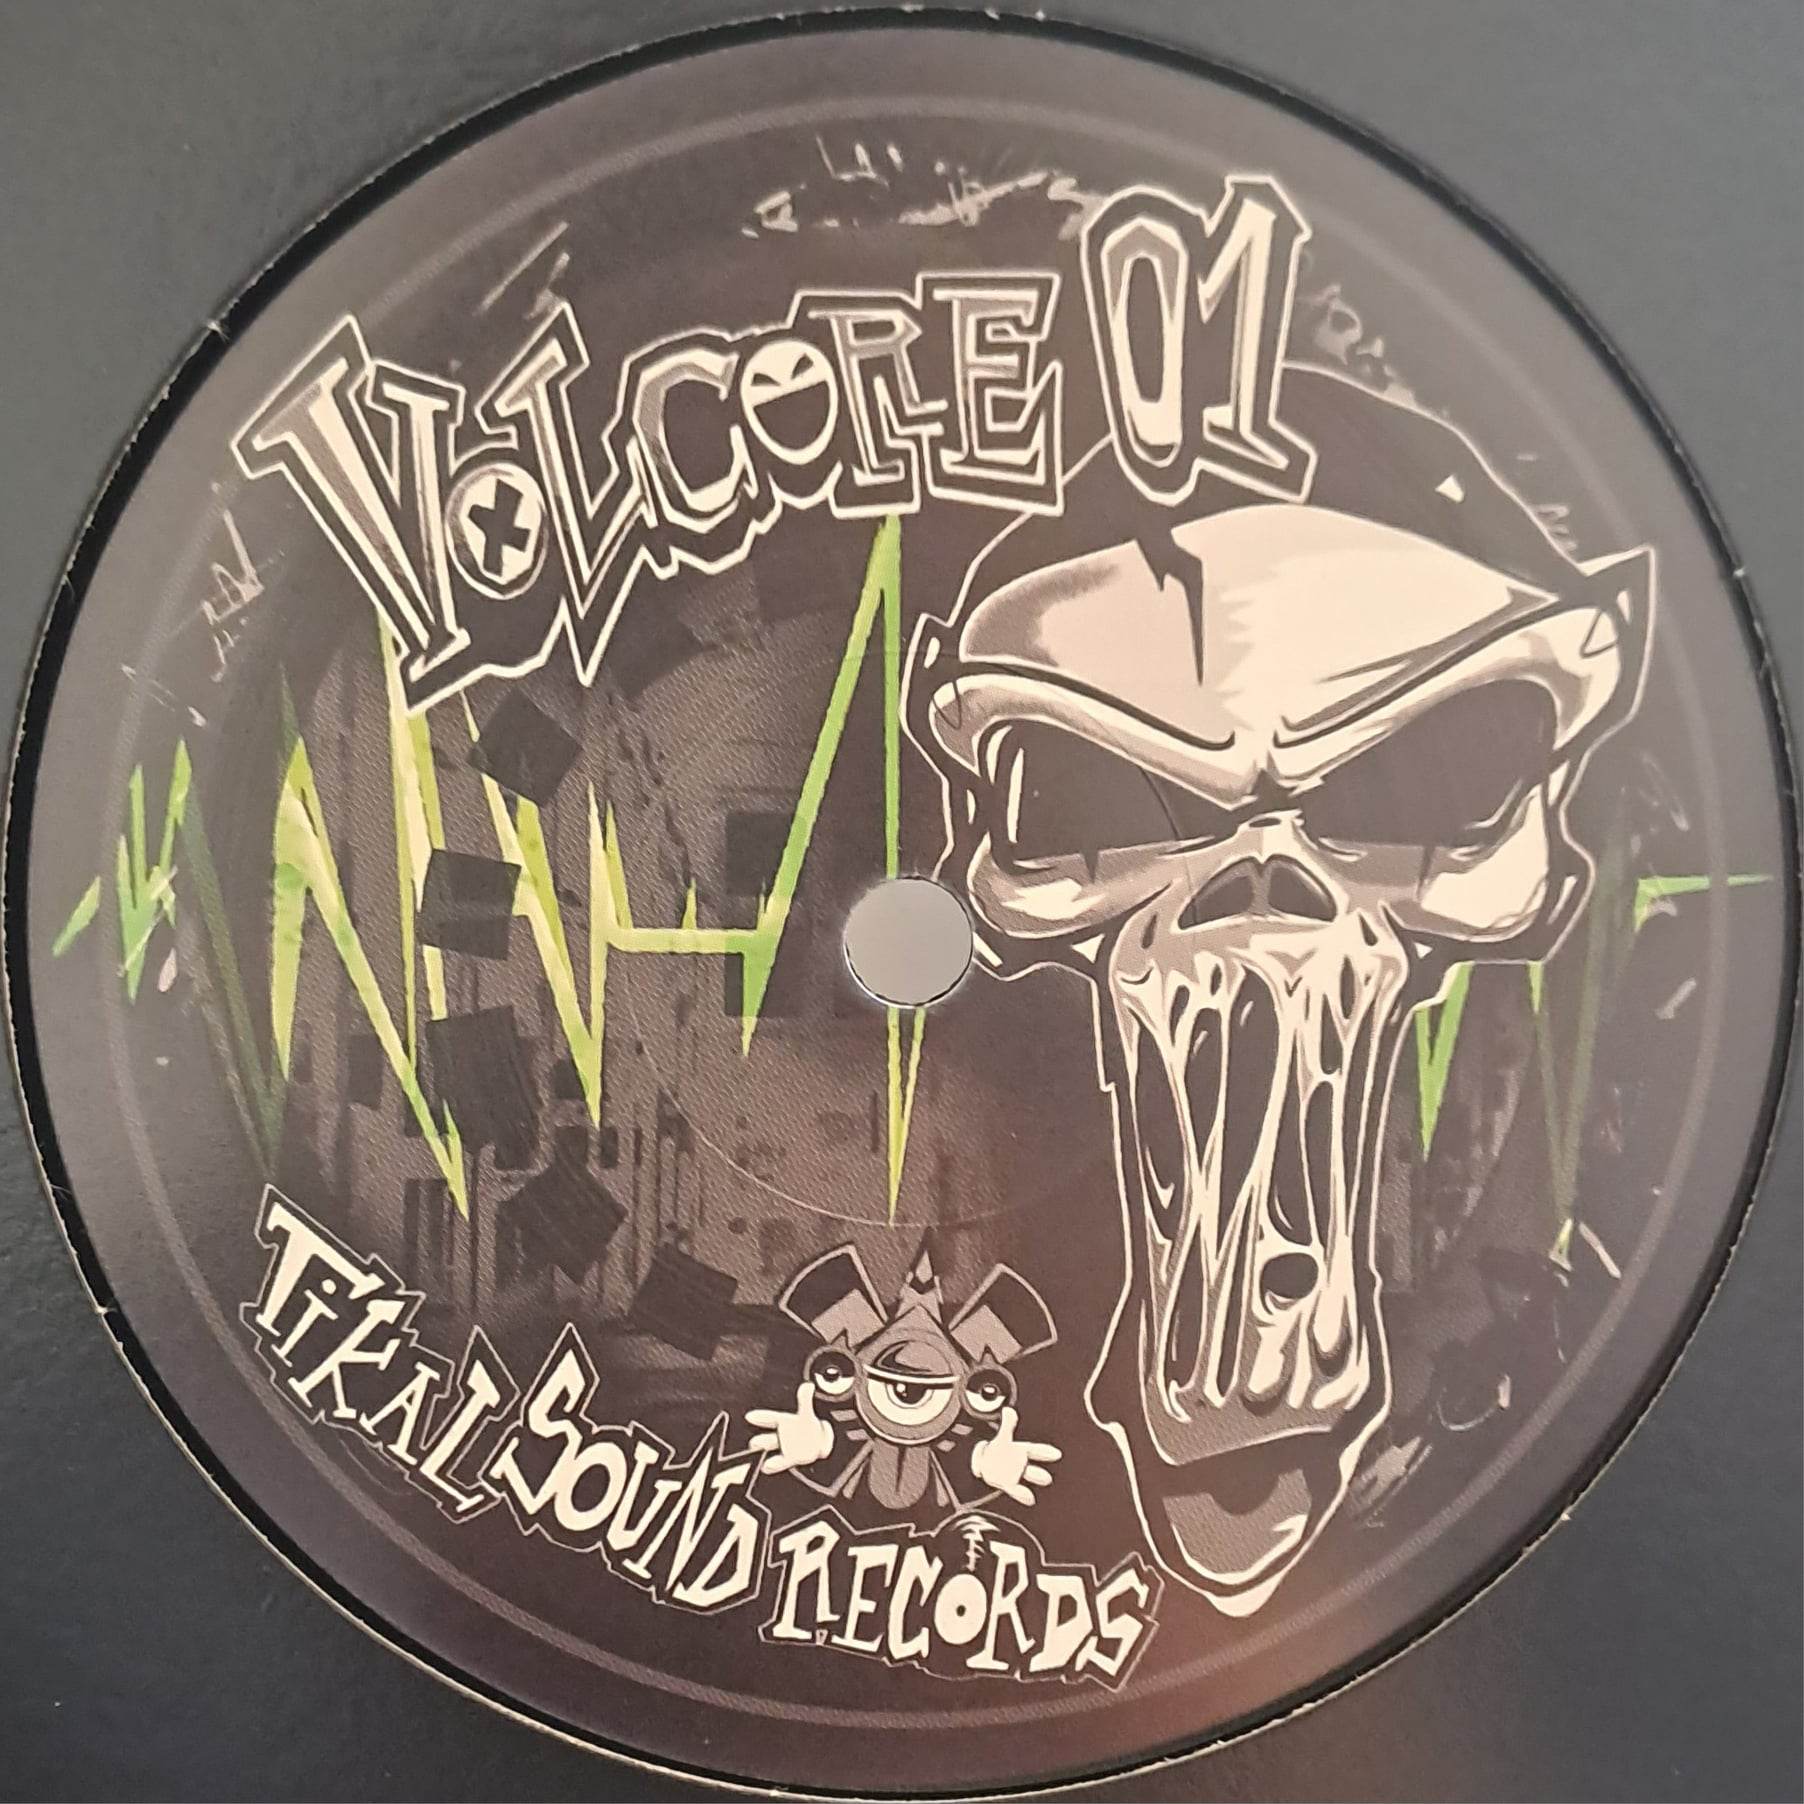 Volcore 01 (dernières copies en stock) - vinyle freetekno